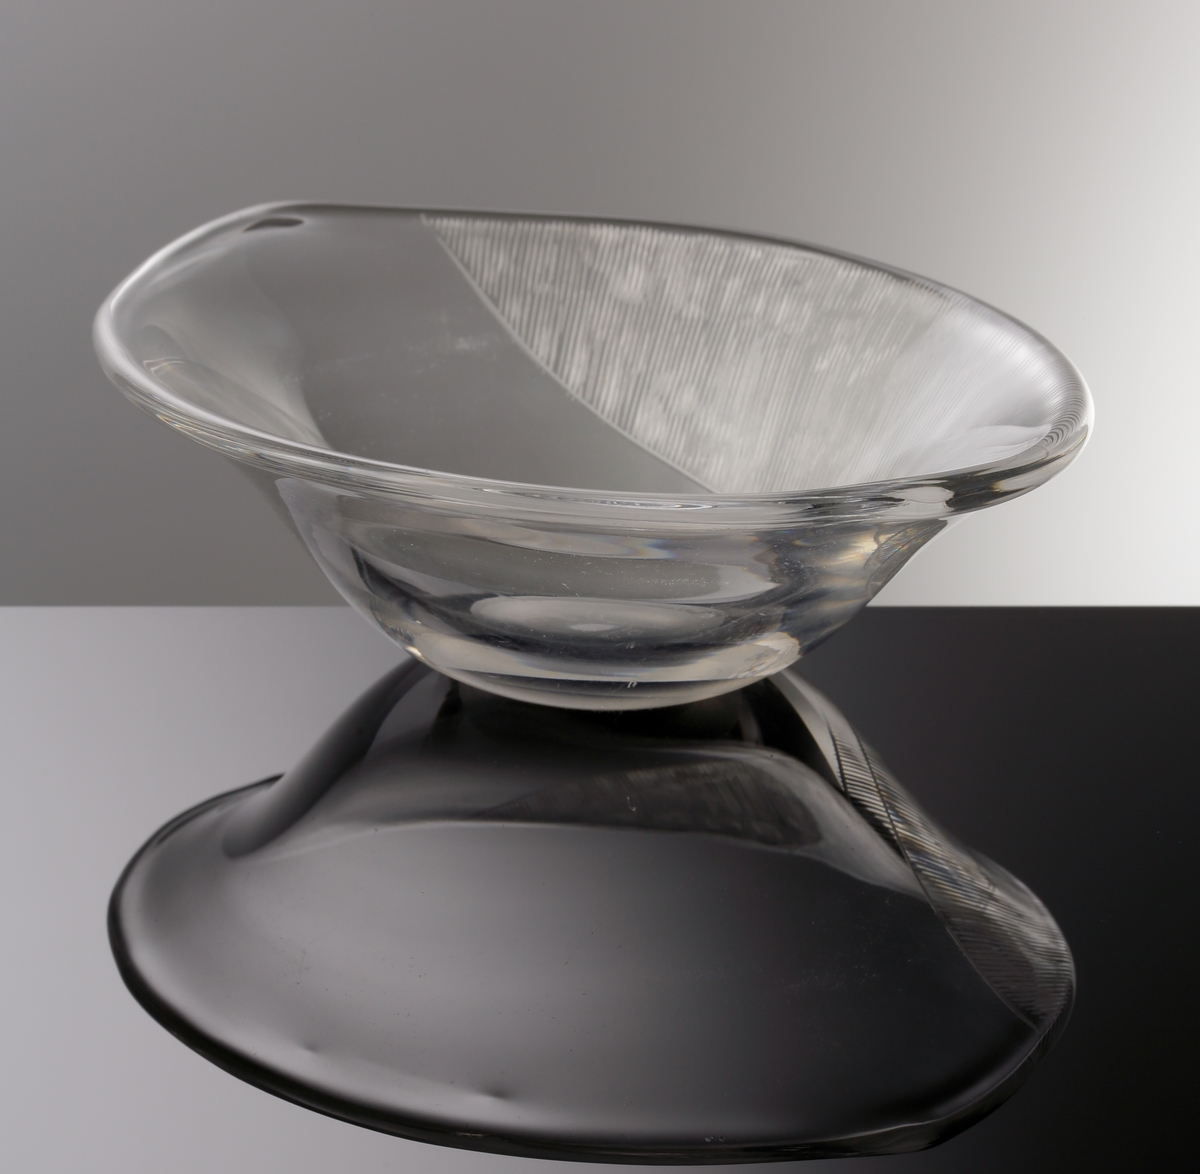 Formgiven av Edvin Öhrström. Oval skål (prov) med yttäckande slipad dekor på skålens ena sida.